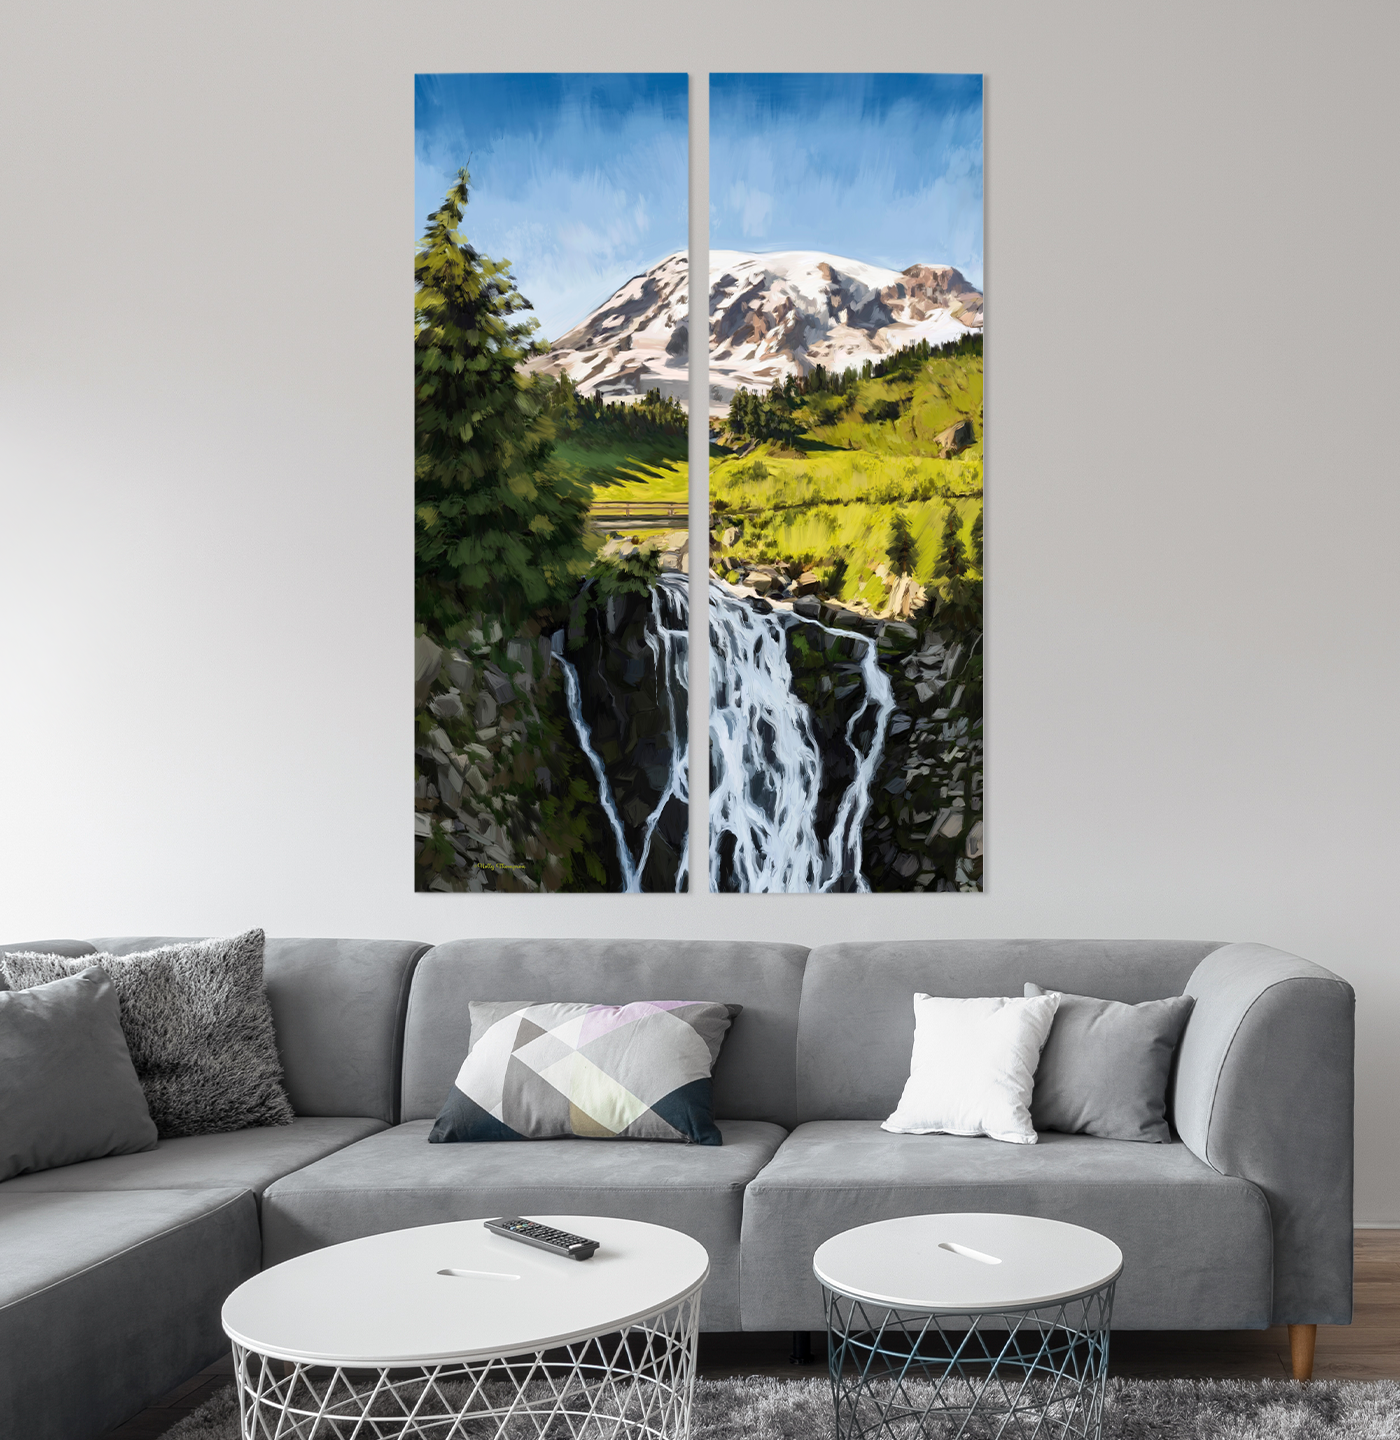 Mount Rainier National Park by Holly Thompson